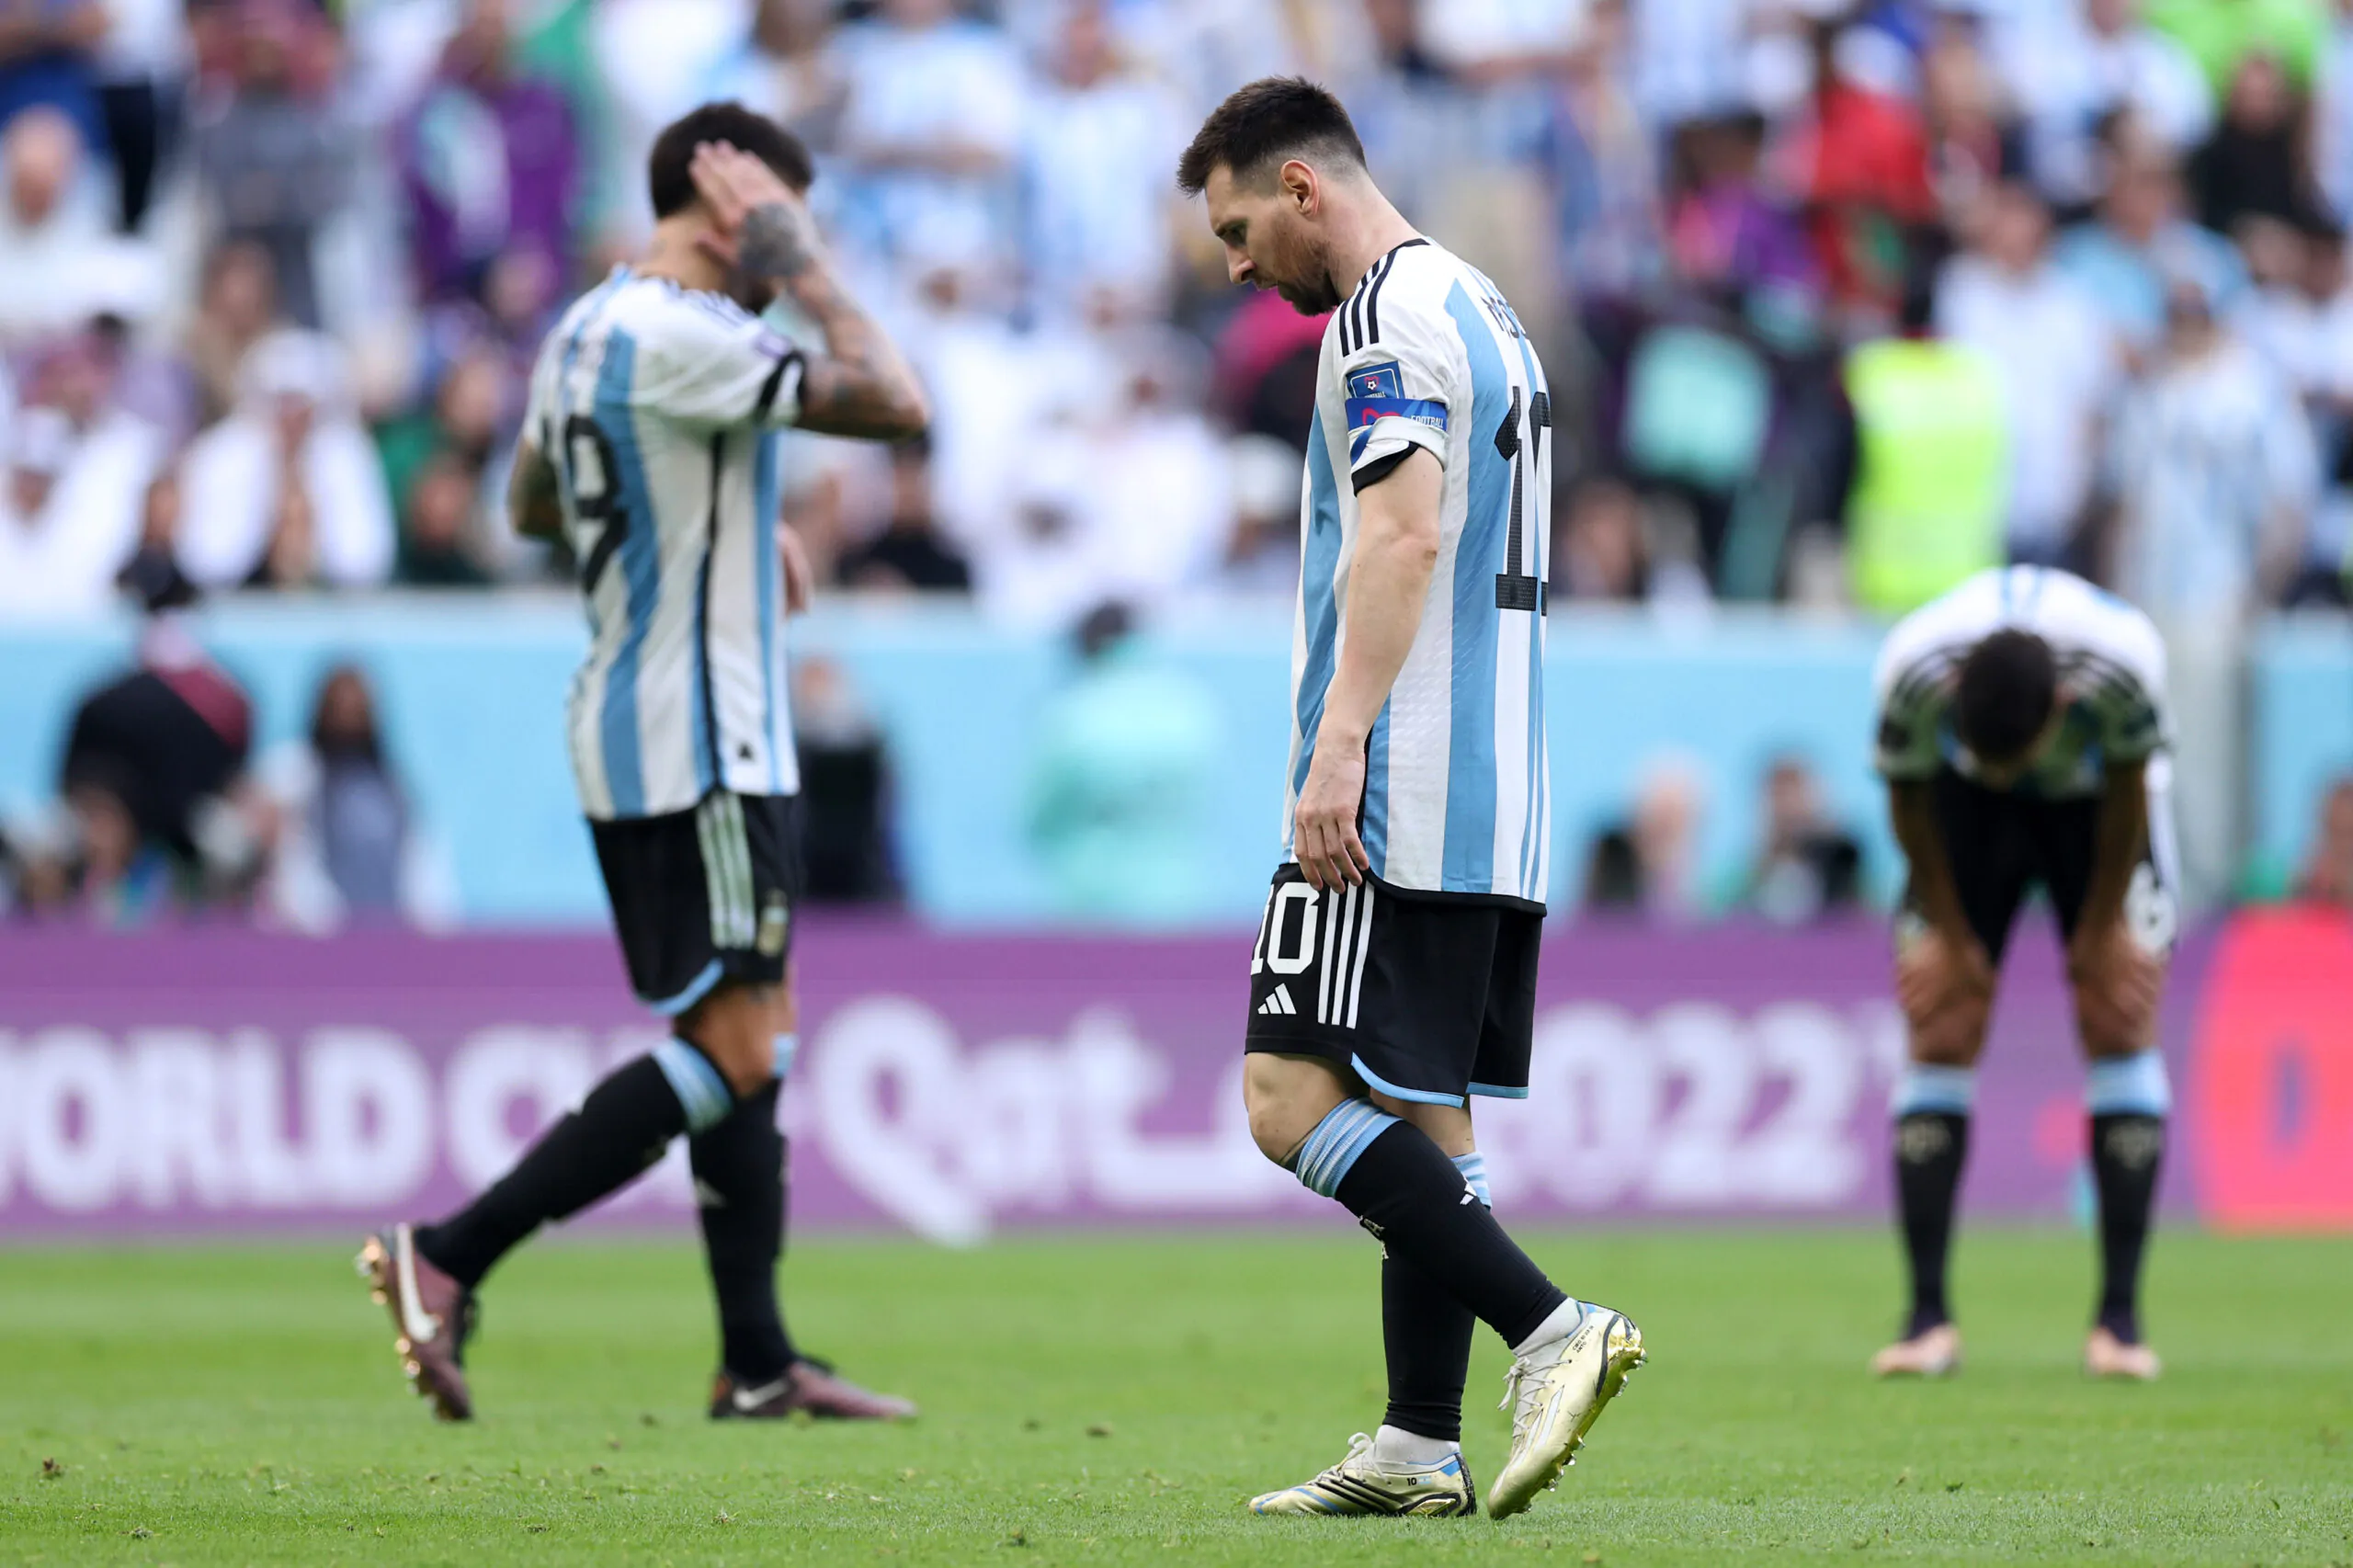 L’Argentina spreca la possibilità di superare l’Italia: record al sicuro